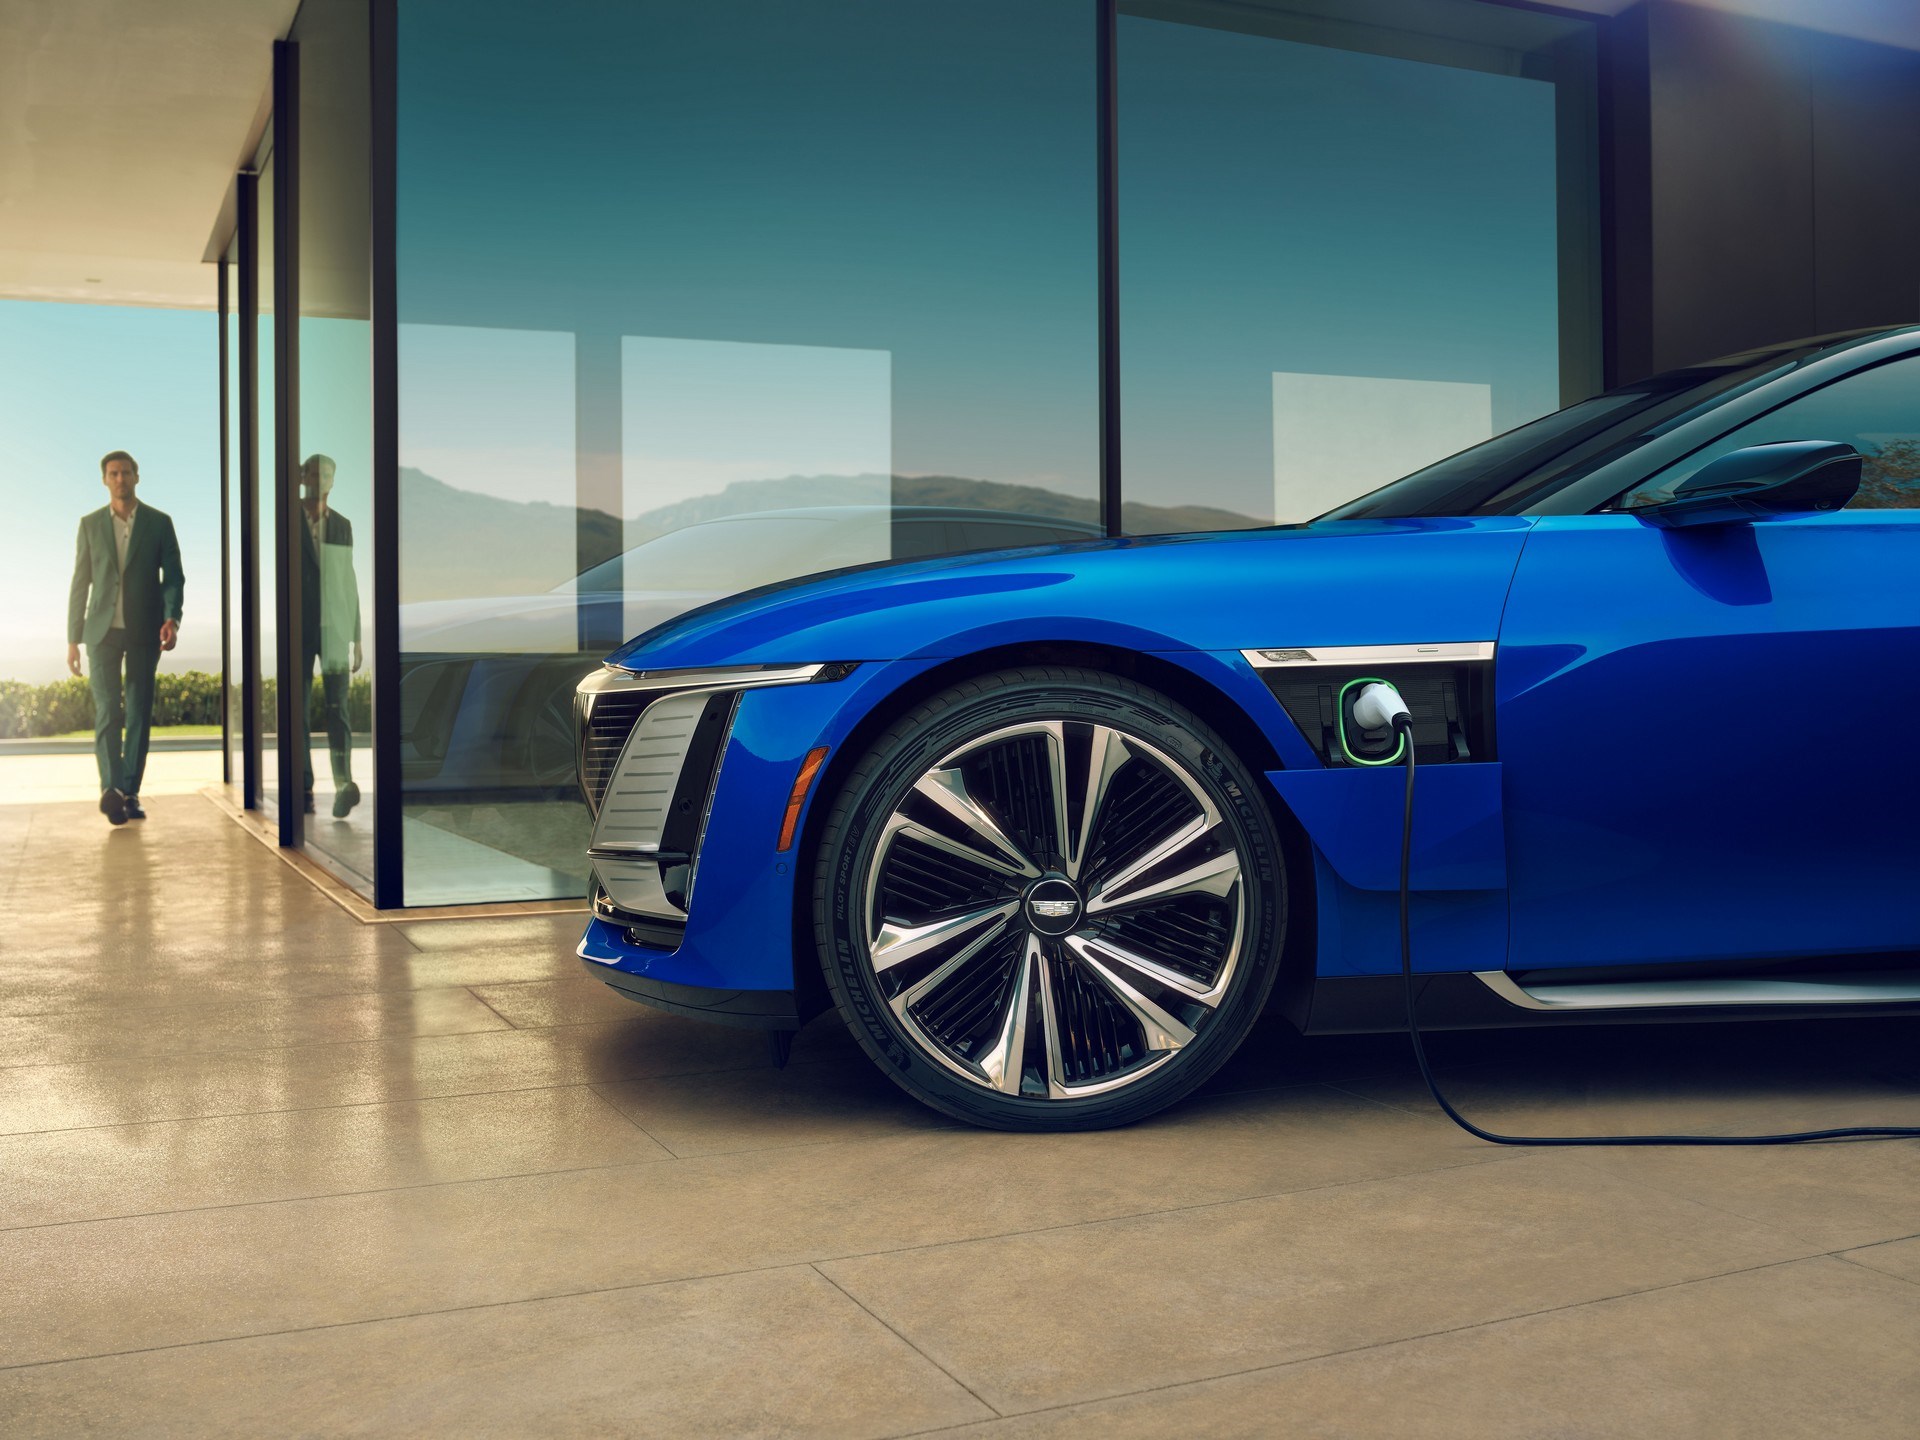 300 bin dolarlık elektrikli otomobil tanıtıldı: Cadillac Celestiq